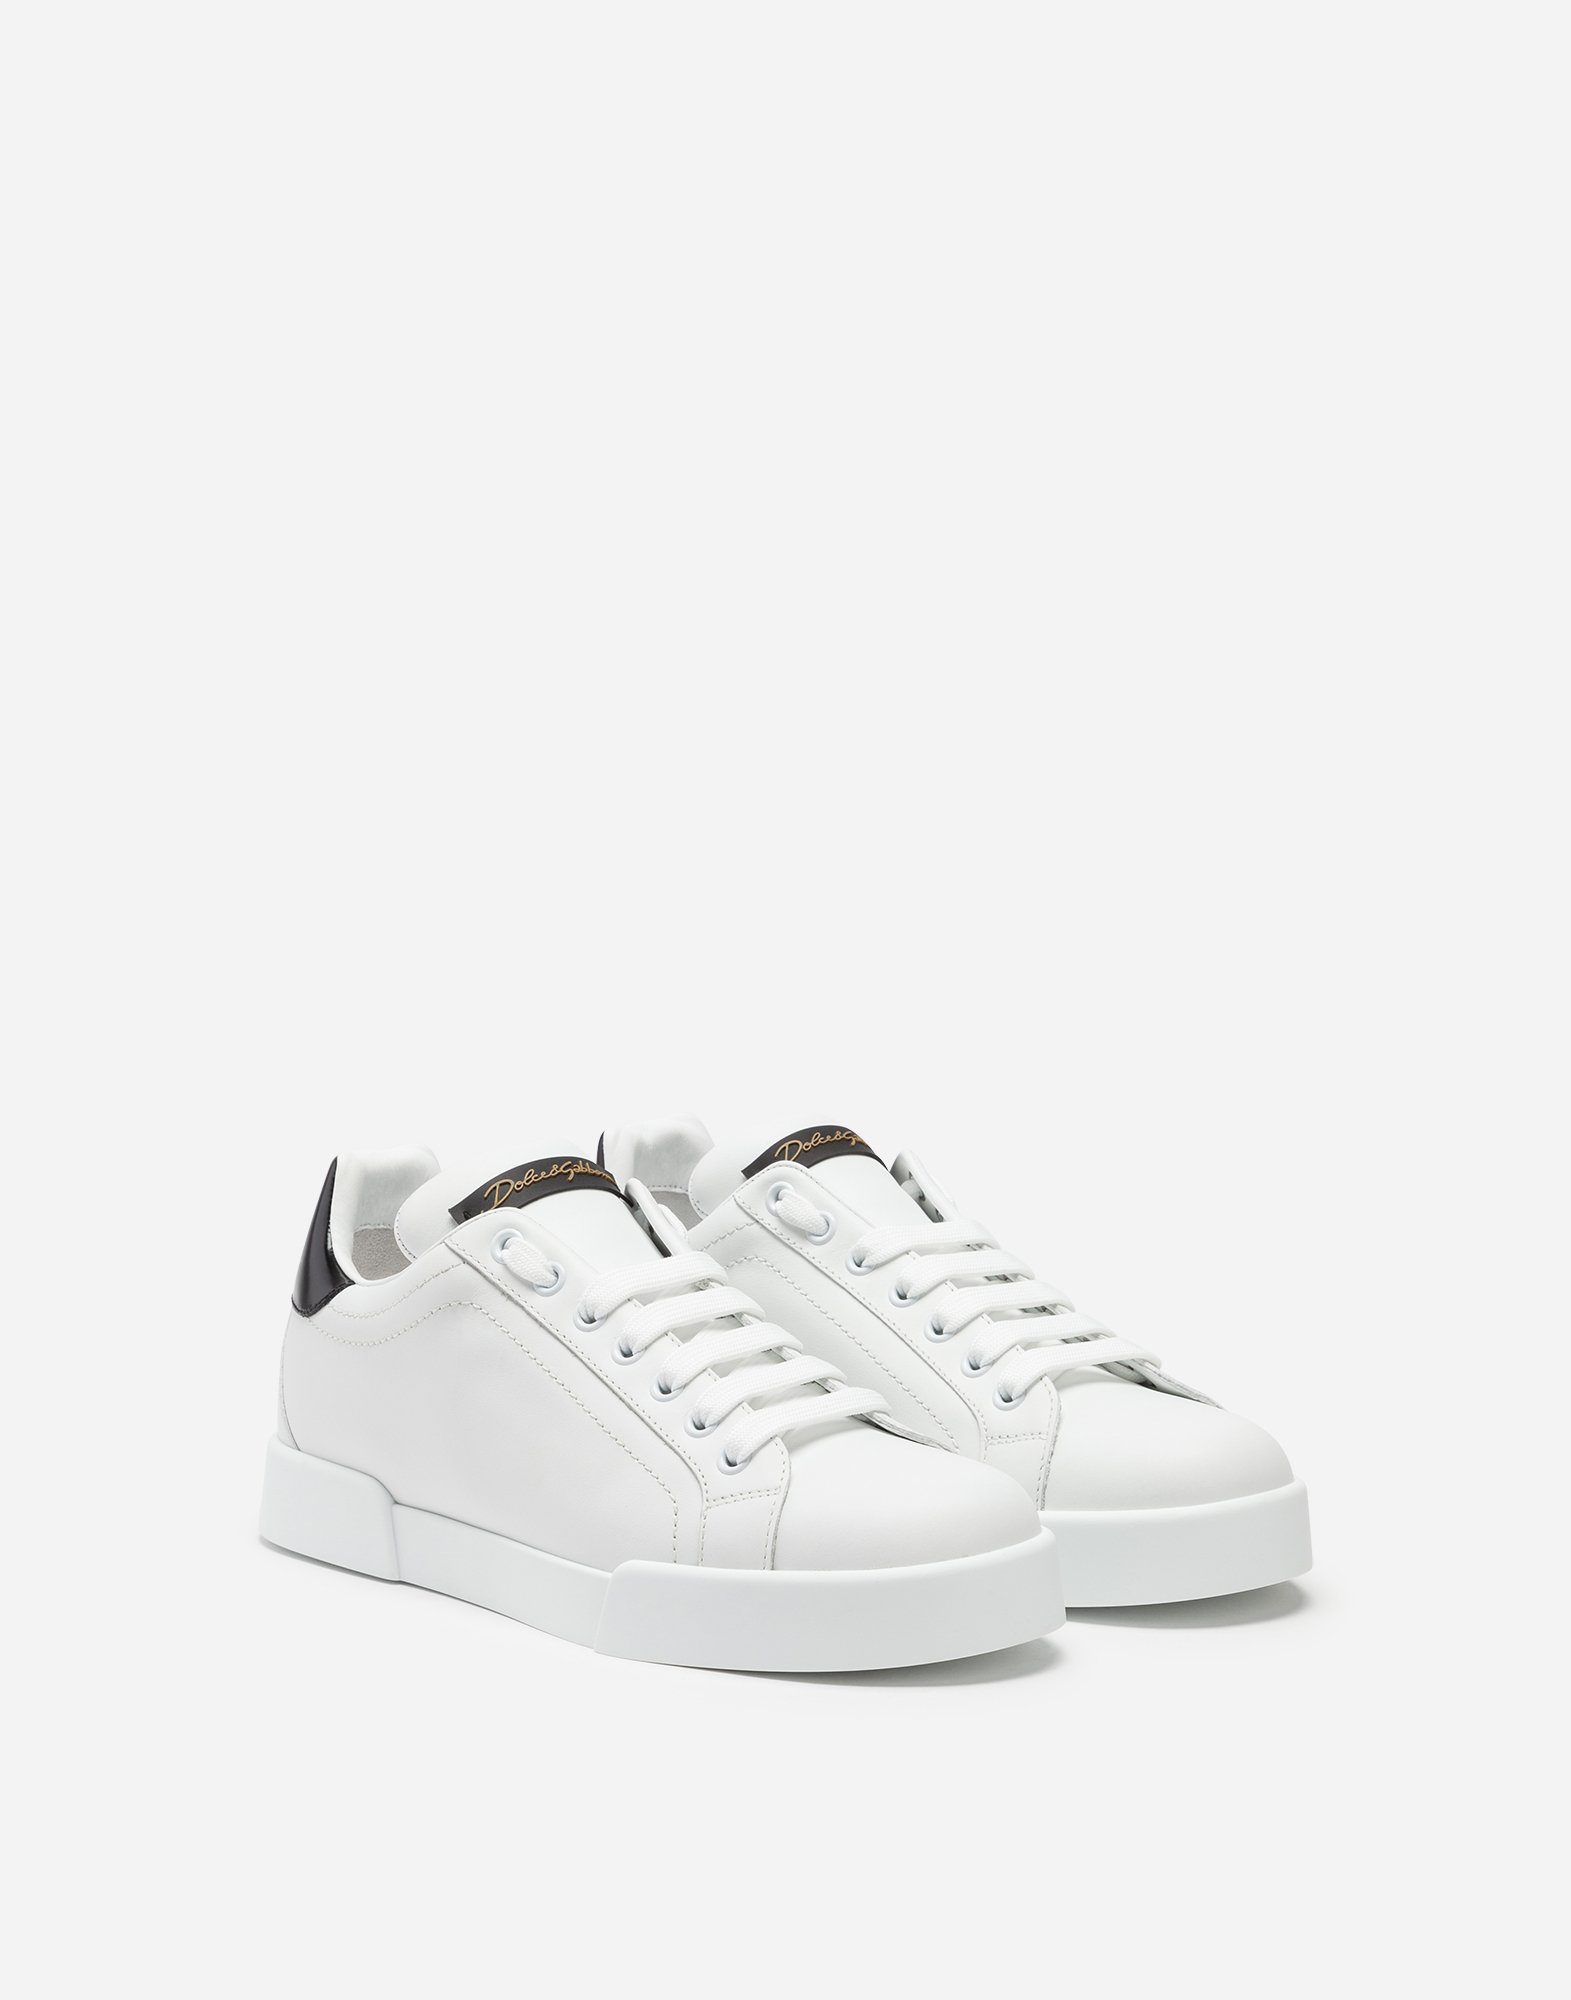 Dolce & Gabbana Leather Portofino sneakers - Women White 2